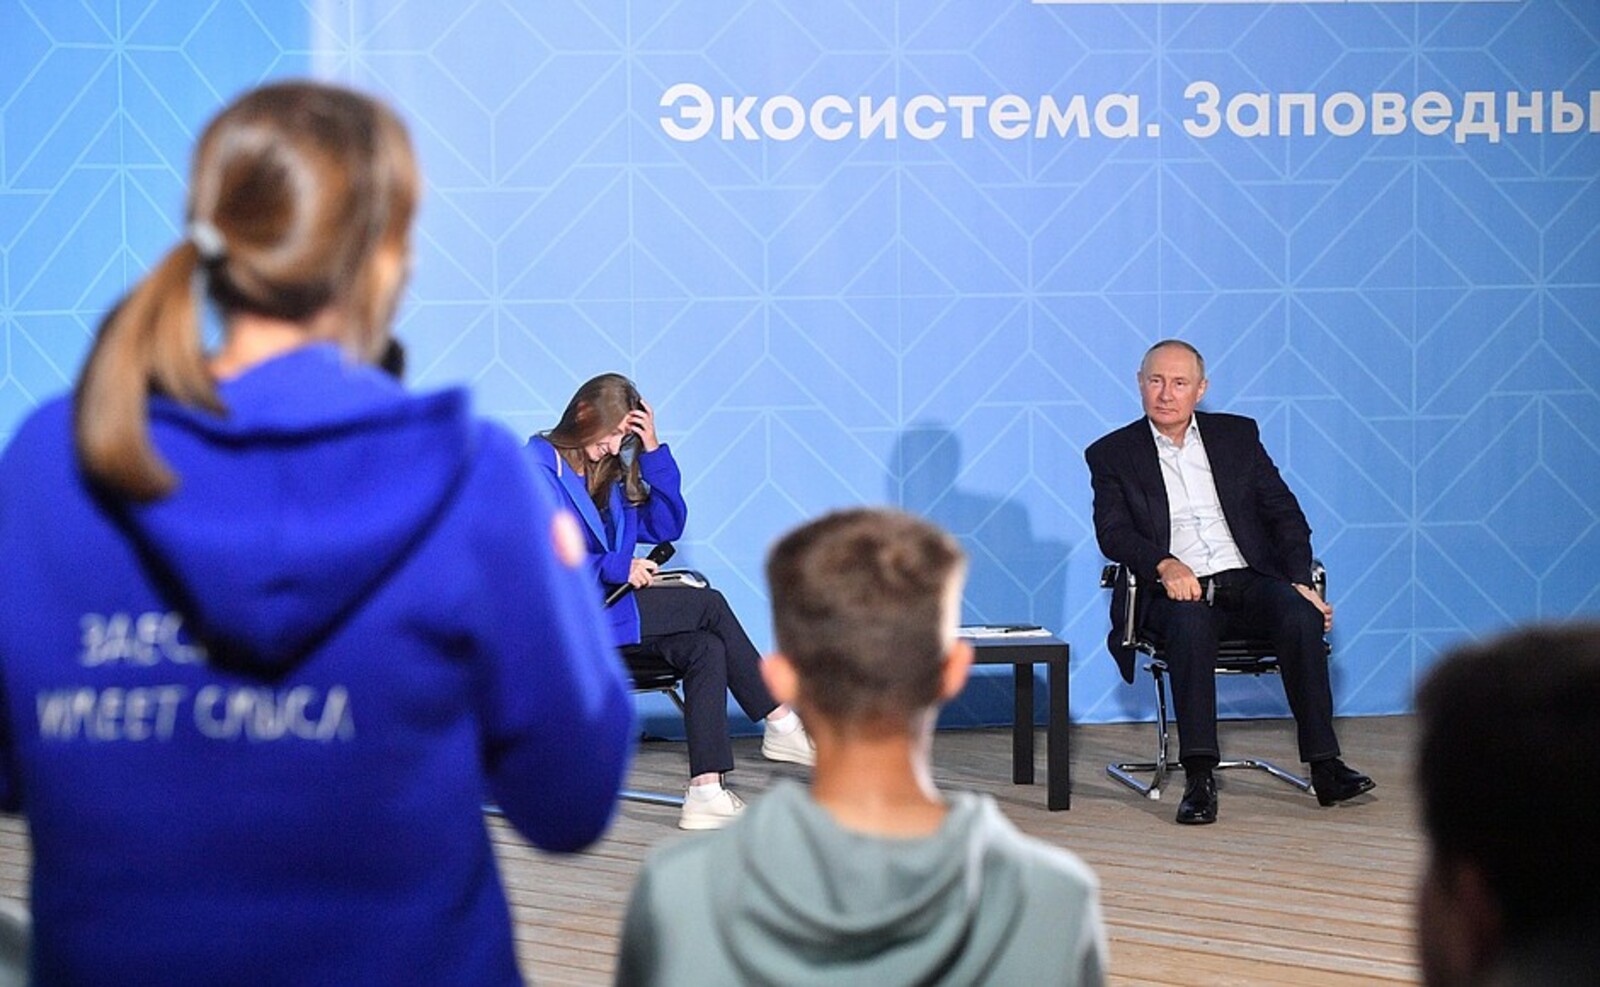 Владимир Путин встретился с участниками Всероссийского молодёжного экологического форума «Экосистема. Заповедный край»